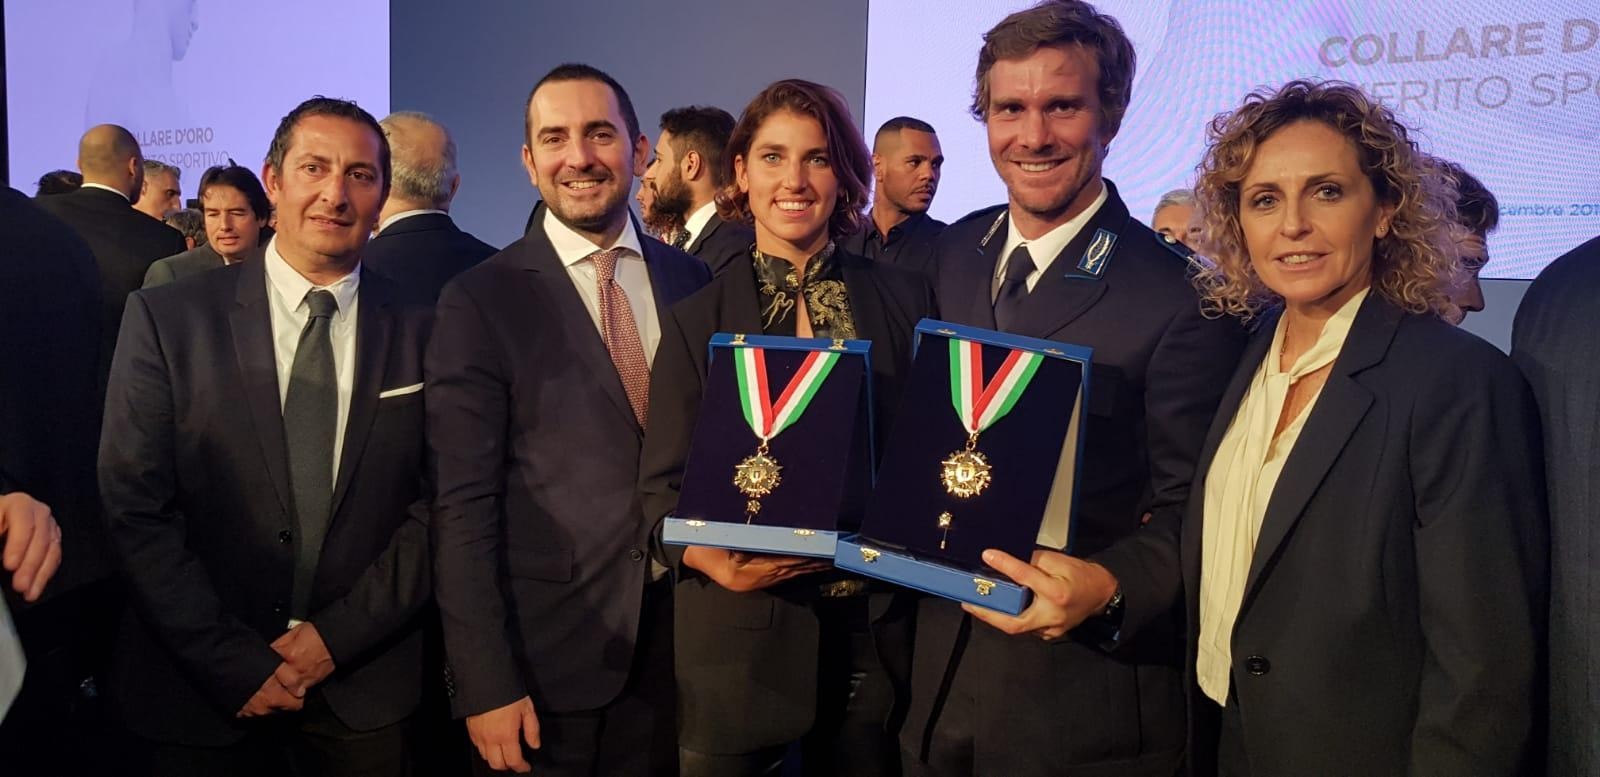 Vittorio Bissaro e Maelle Frascari collari d'oro 2019